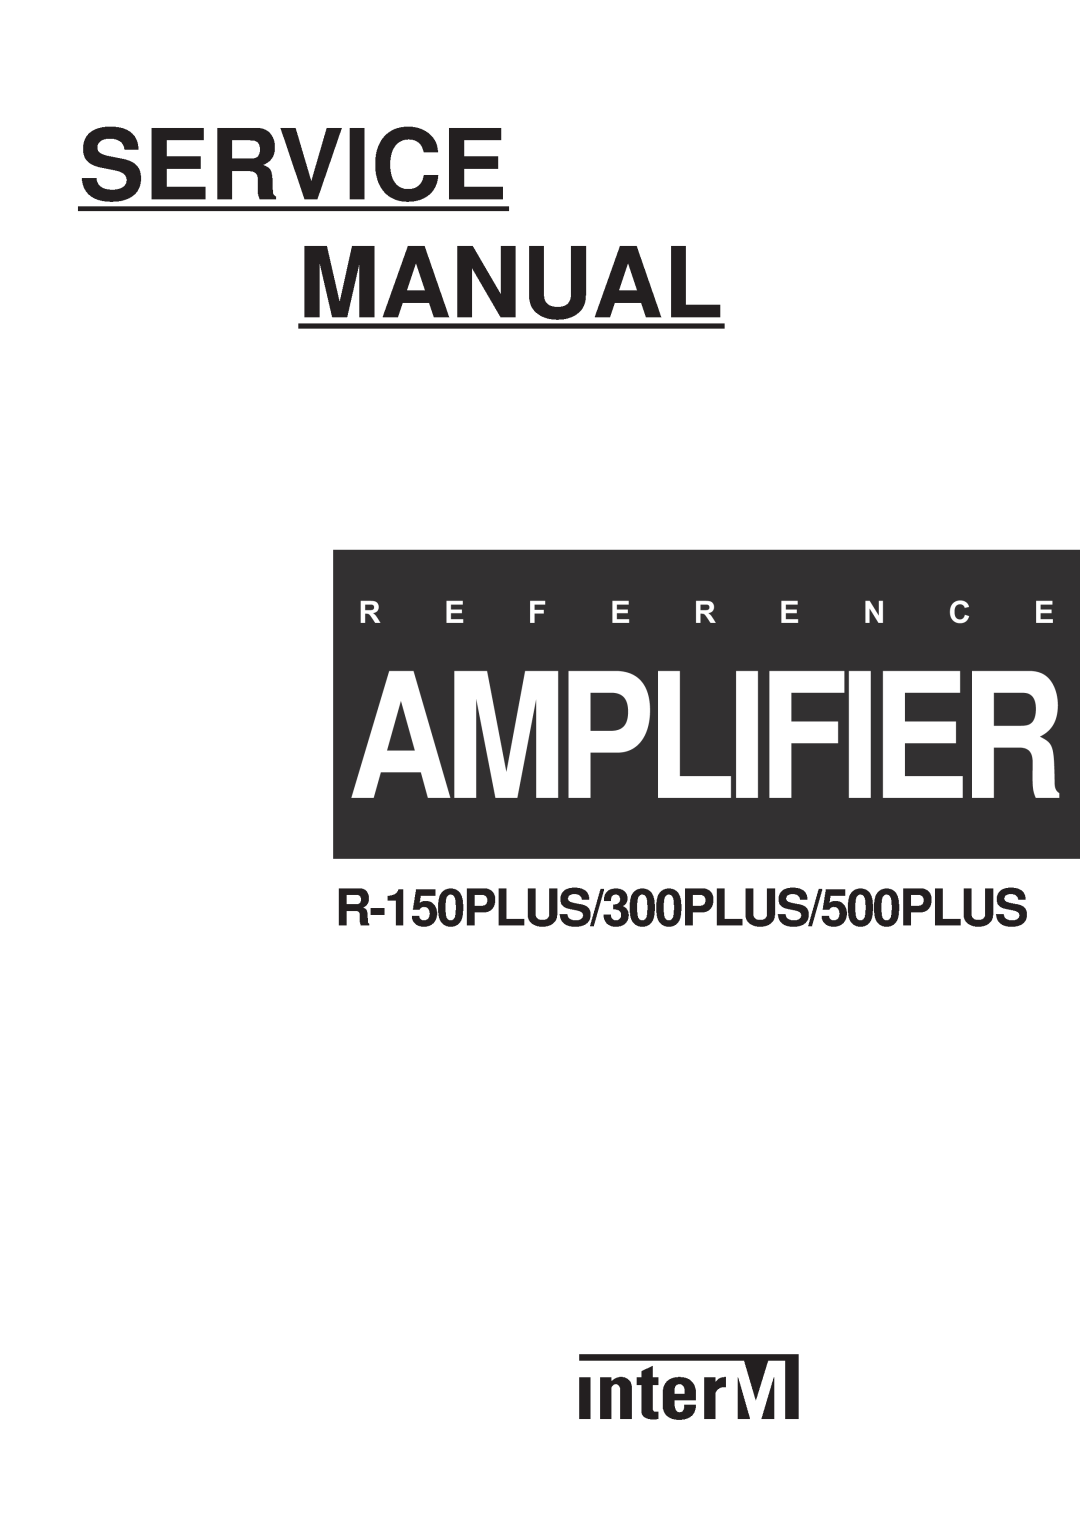 Macsense Connectivity service manual Amplifier, R-150PLUS/300PLUS/500PLUS, R E F E R E N C E 